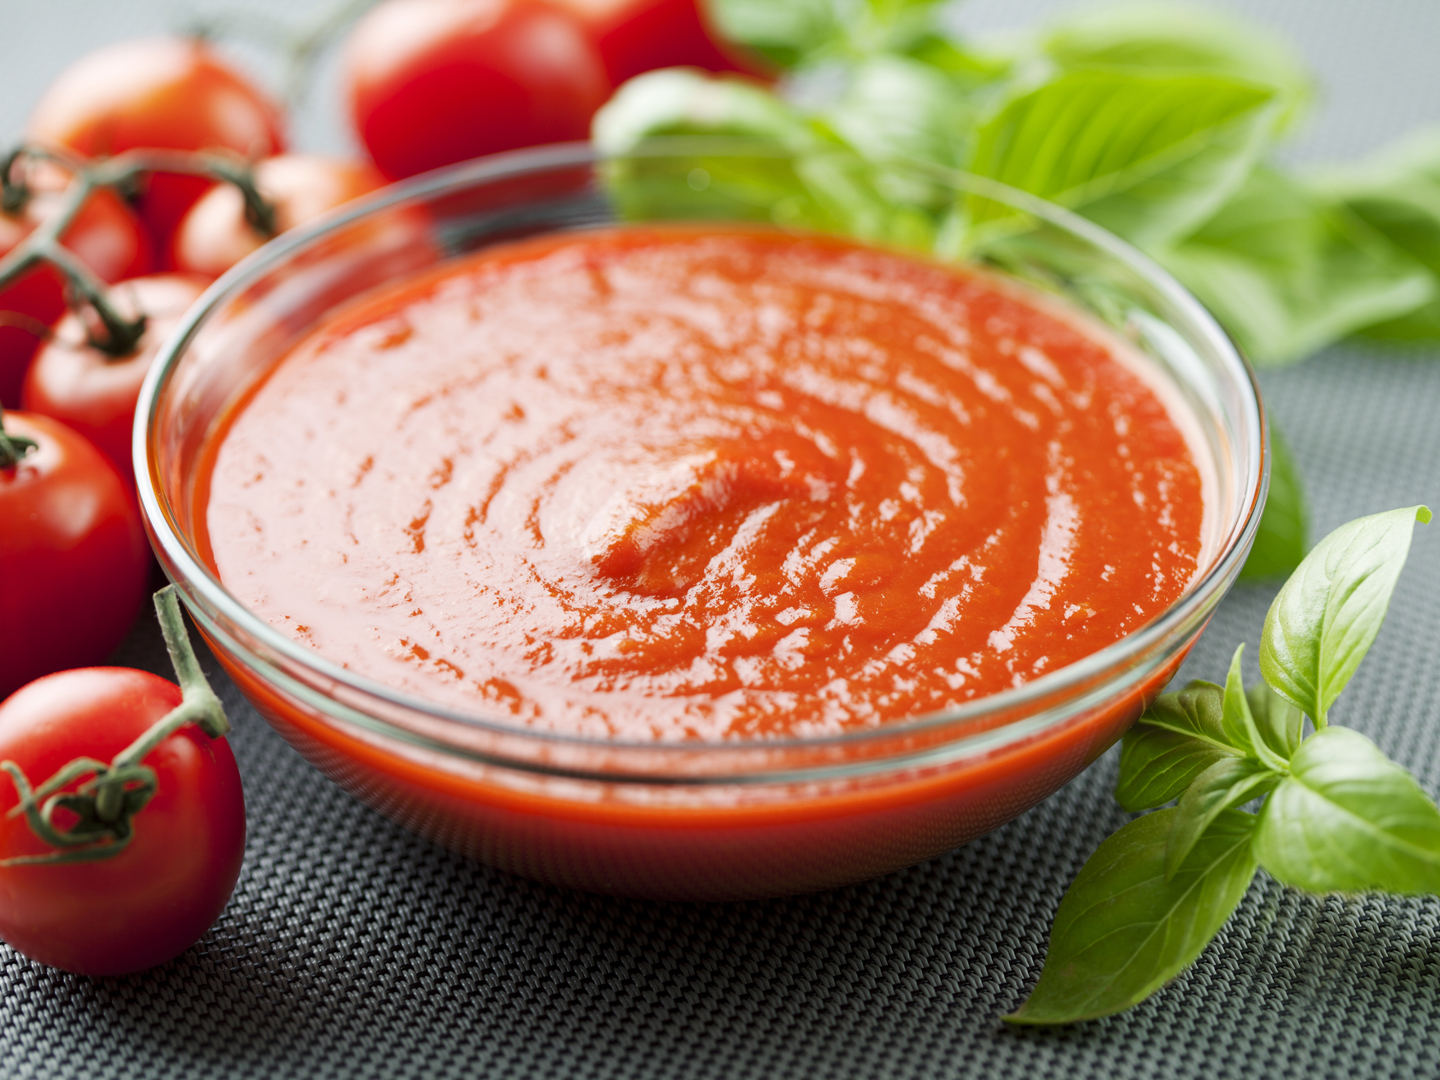 True Food Kitchen Tomato Sauce - Dr. Weil's Healthy Kitchen